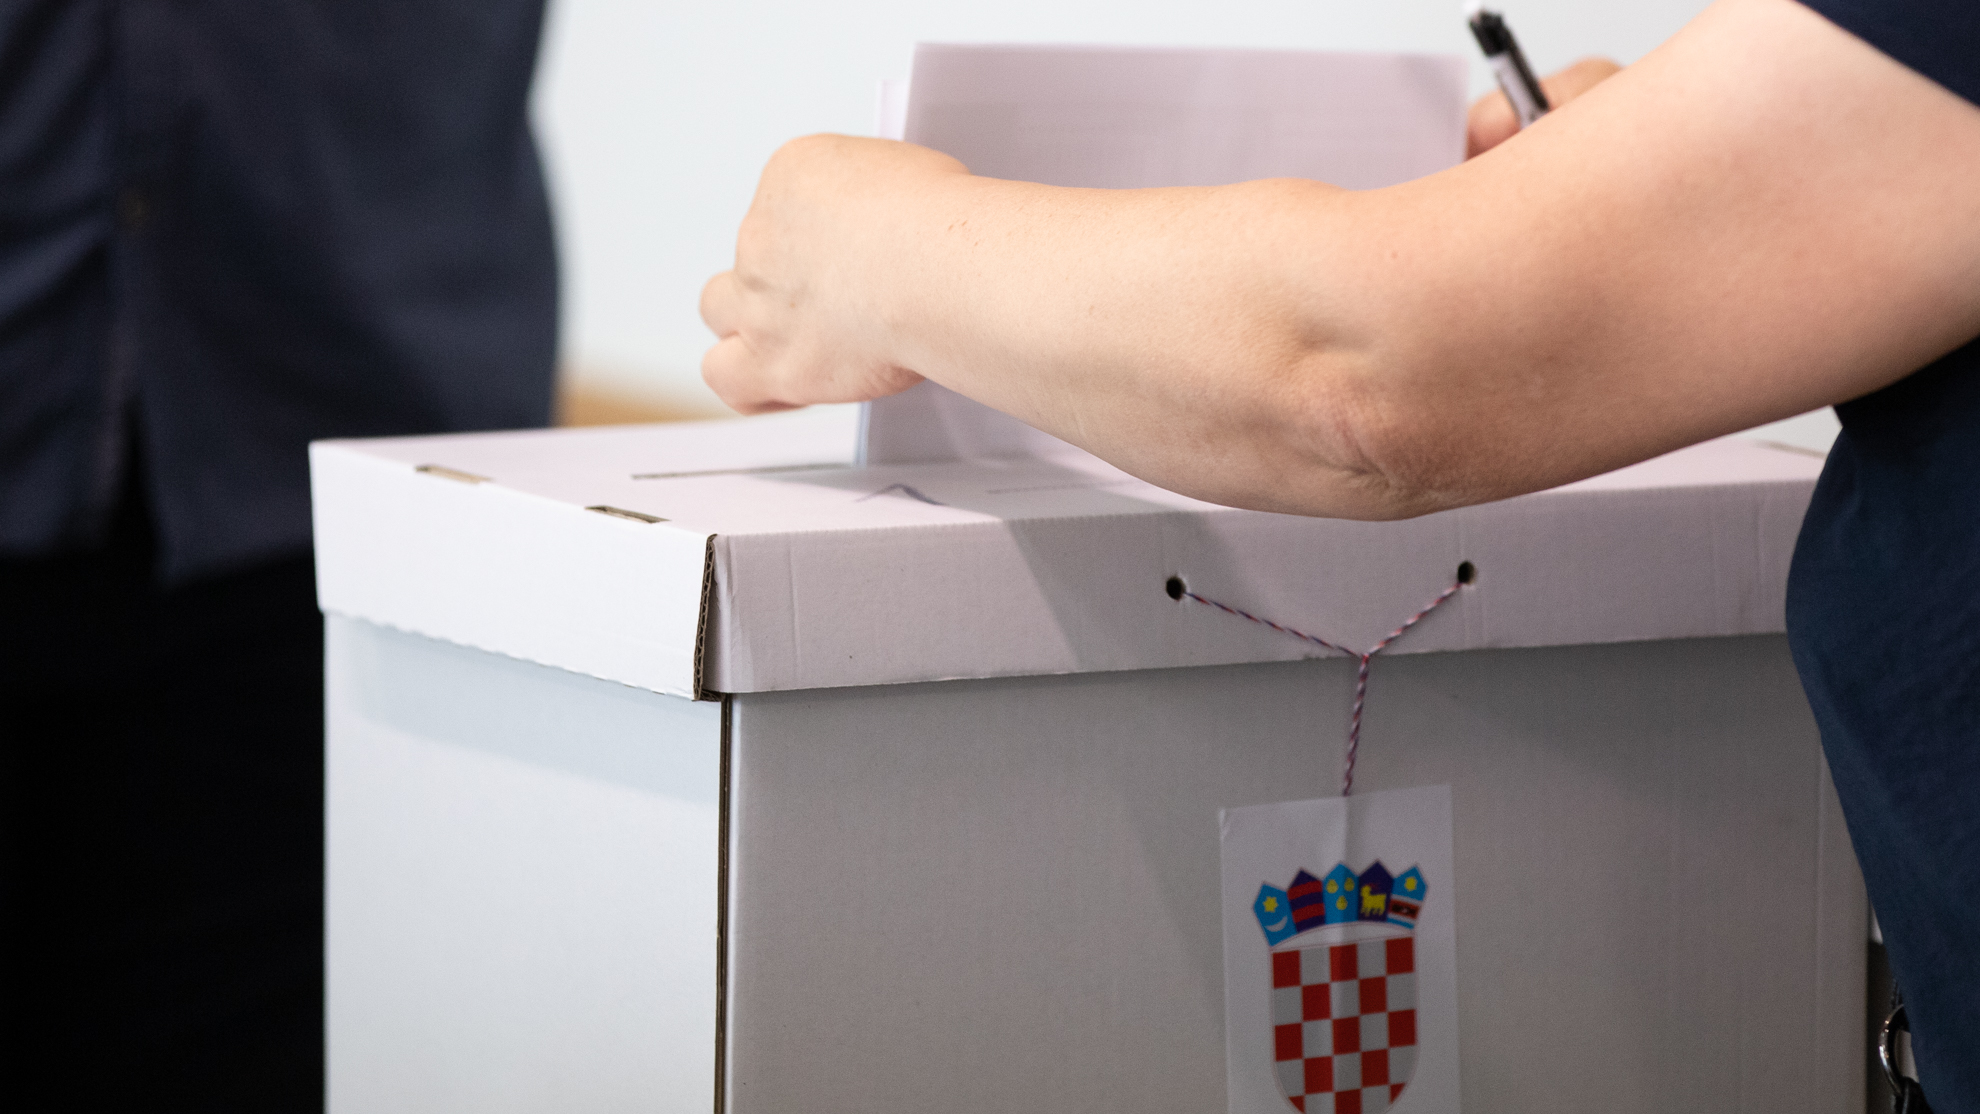 Hrvatska  : BIRALIŠTA SU OTVORENA OD 7:00 ; Počeli jedni od najzahtjevnijih izbora